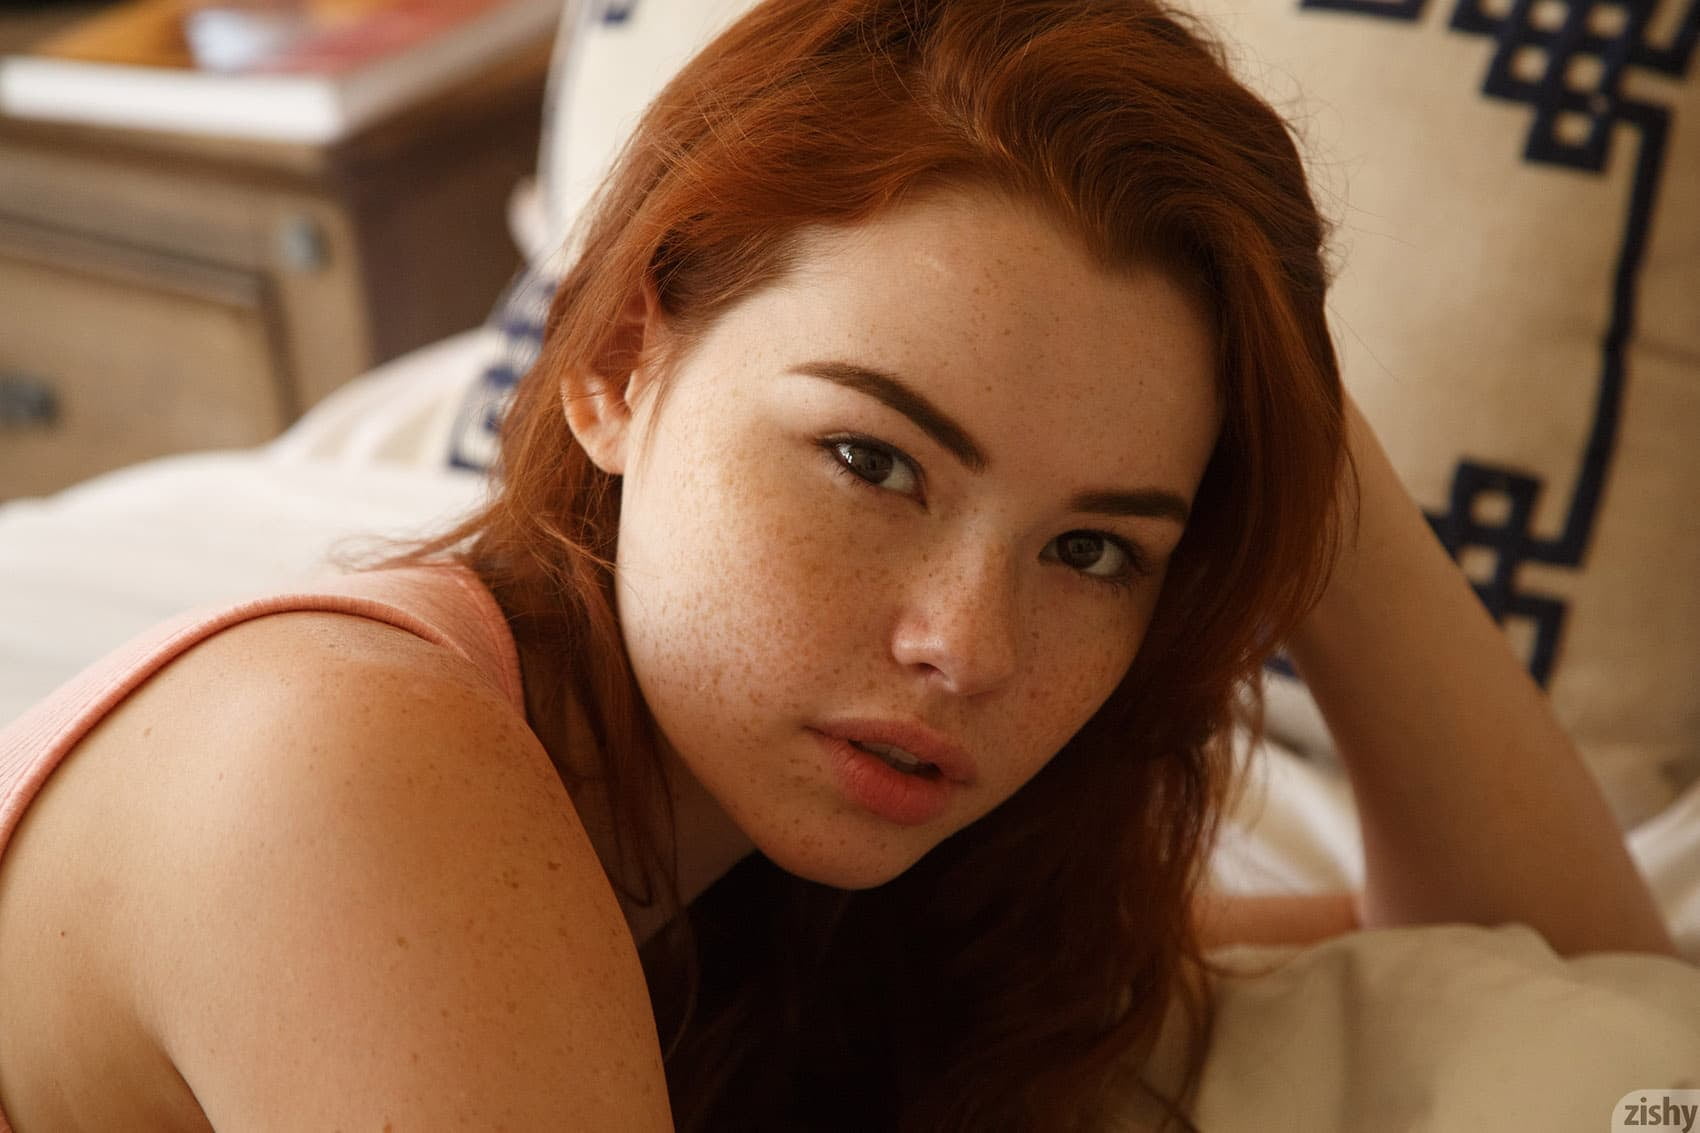 Sabrina Lynn, face, redhead, bed, zishy